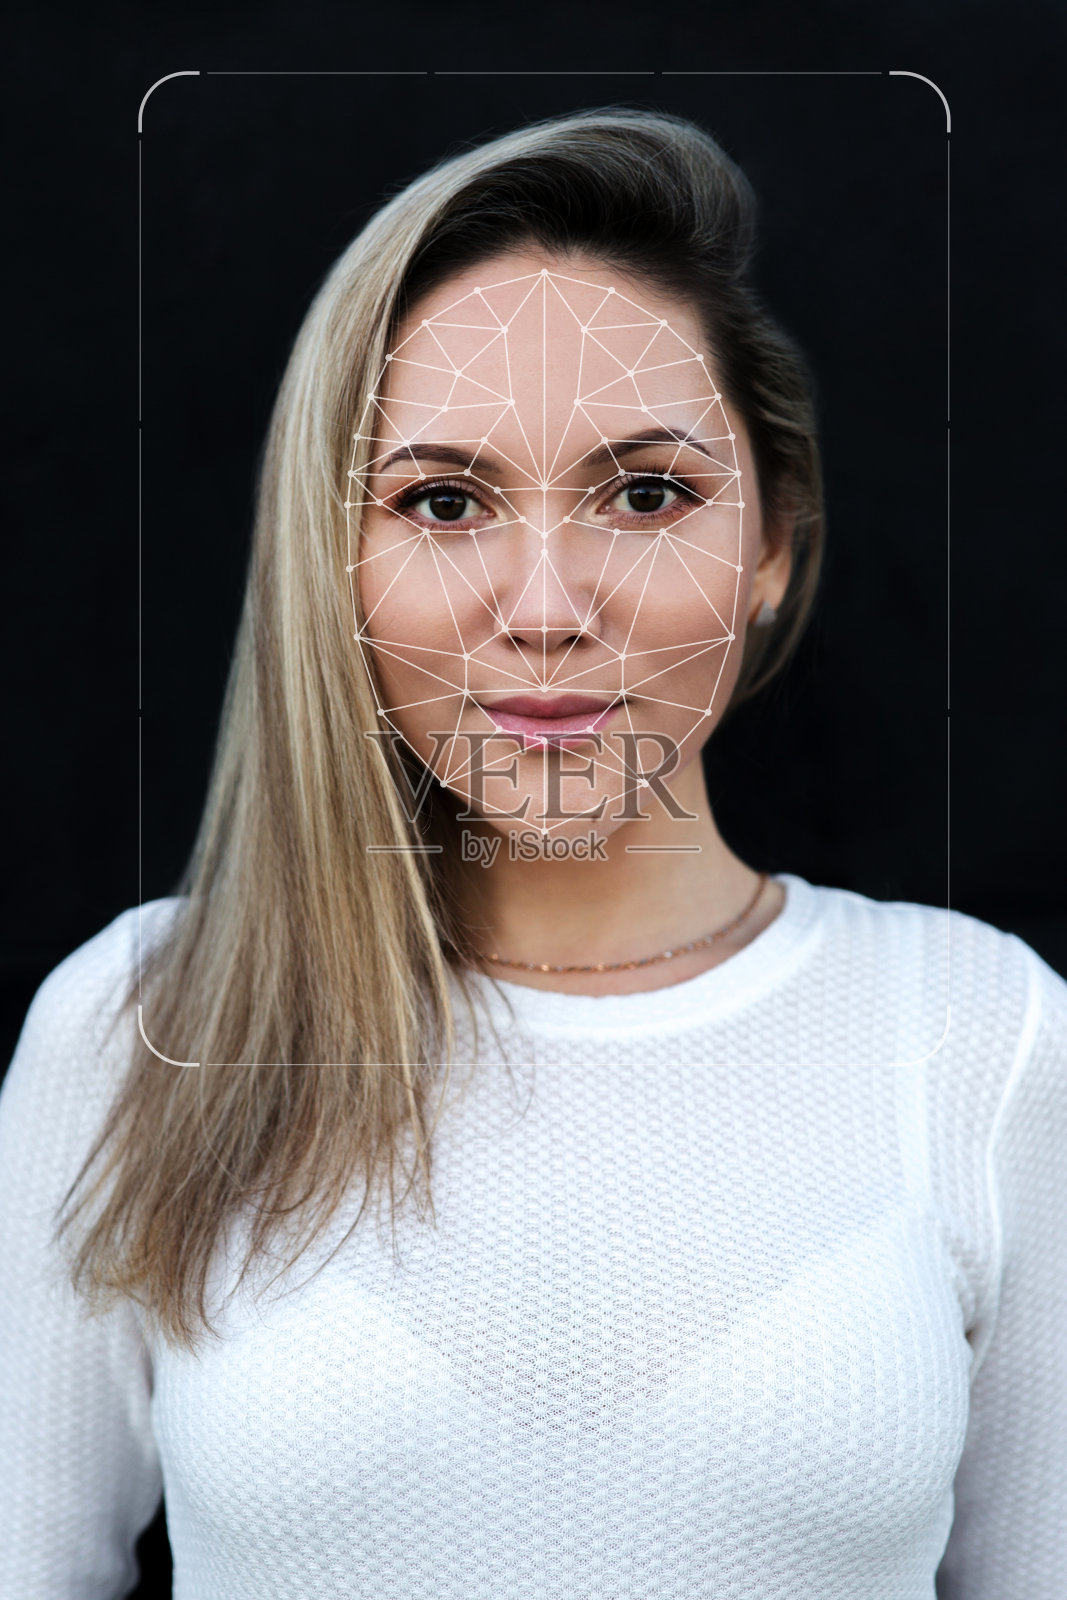 生物识别验证和人脸检测技术创新照片摄影图片